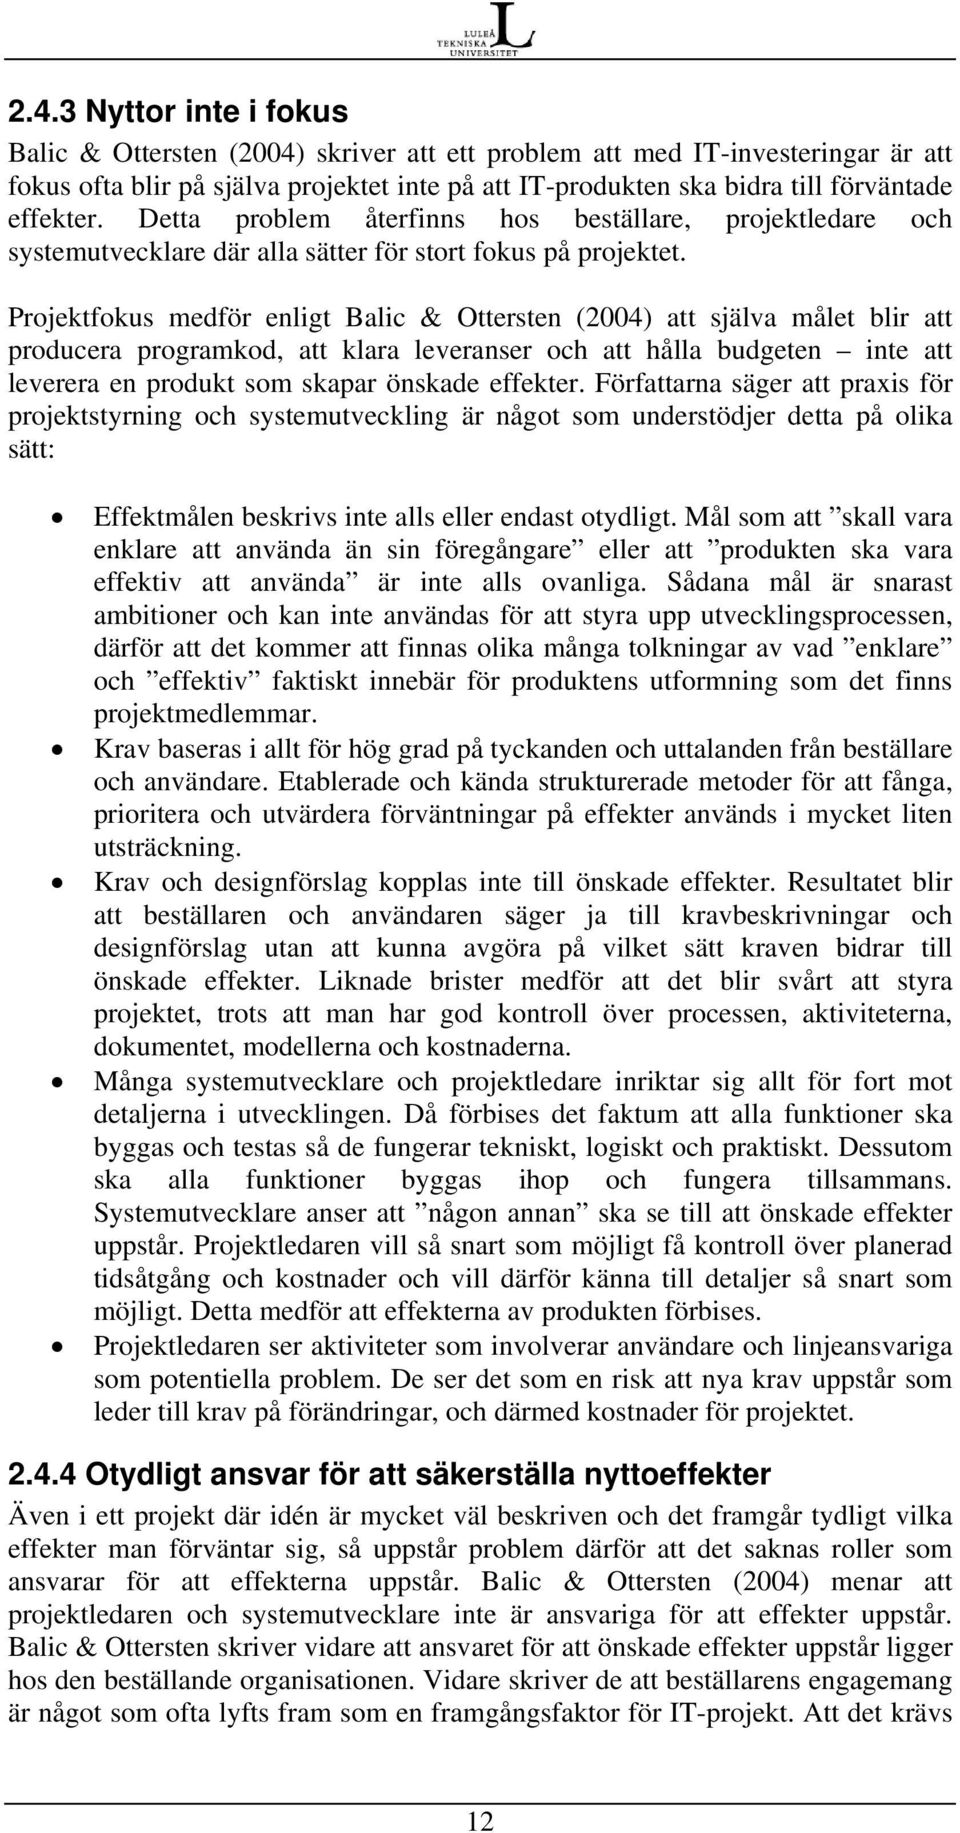 Projektfokus medför enligt Balic & Ottersten (2004) att själva målet blir att producera programkod, att klara leveranser och att hålla budgeten inte att leverera en produkt som skapar önskade